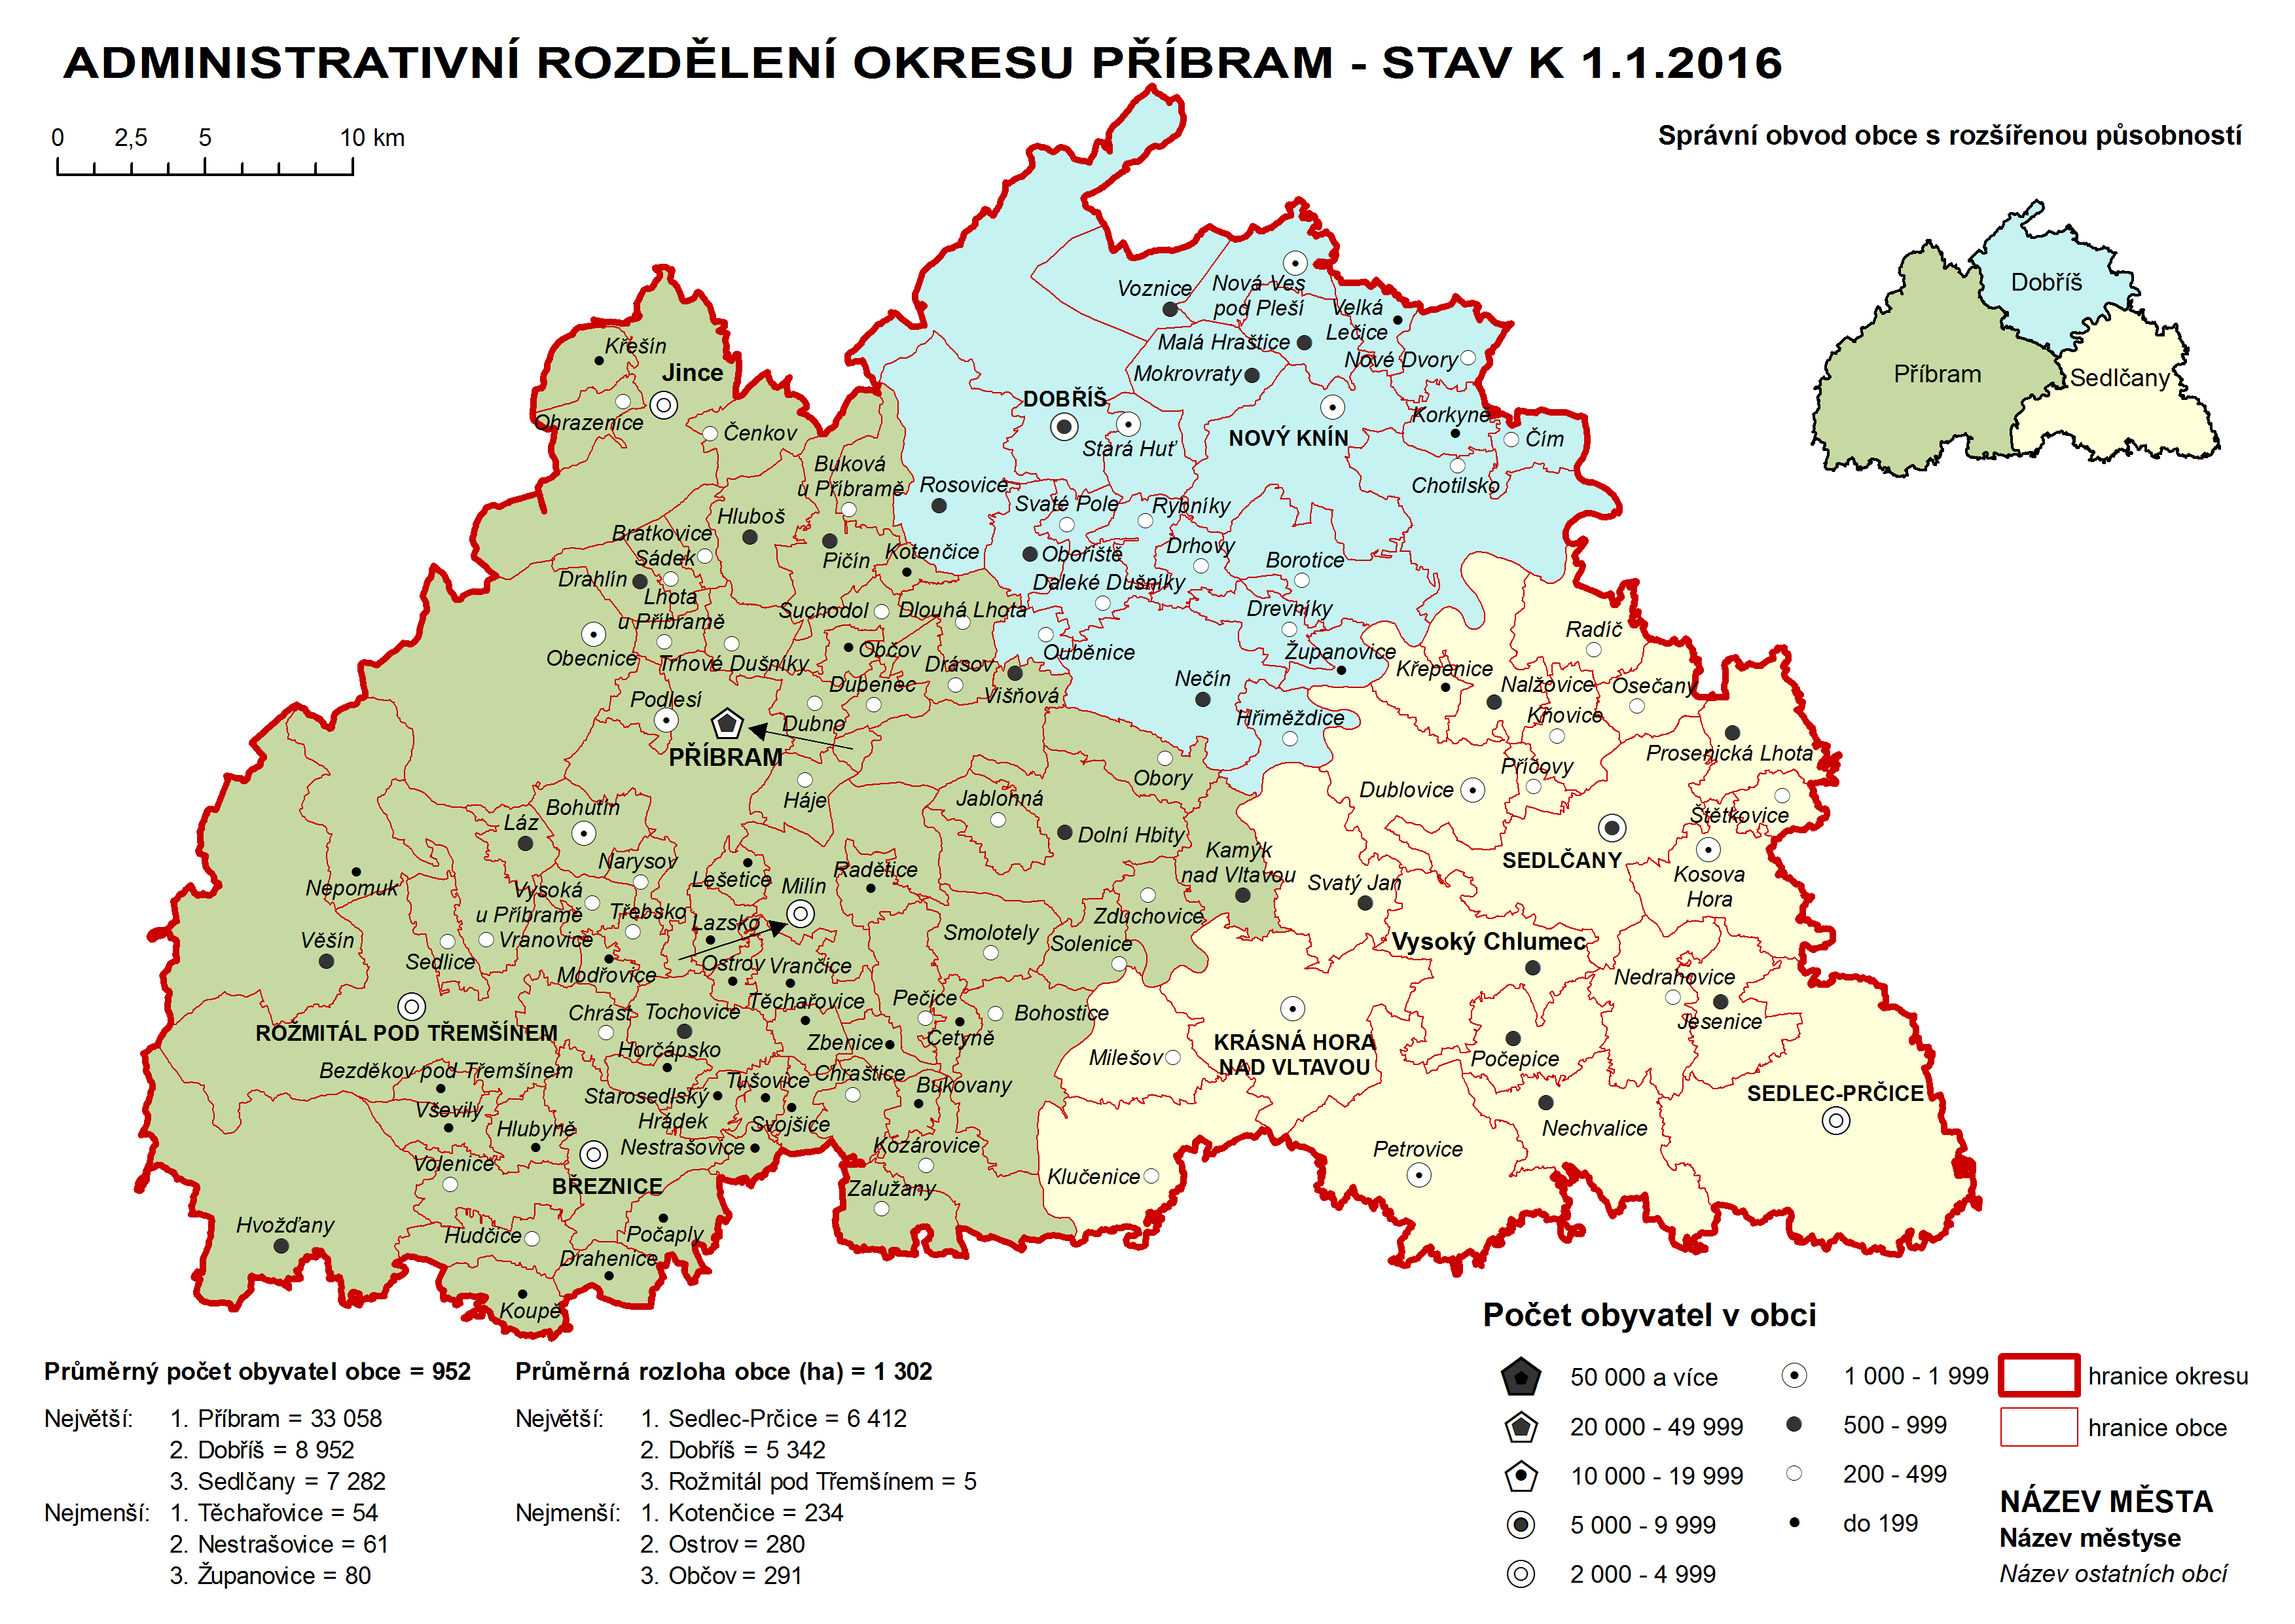 Administrativni rozdělení okresu Příbram - stav k 1.1.2016